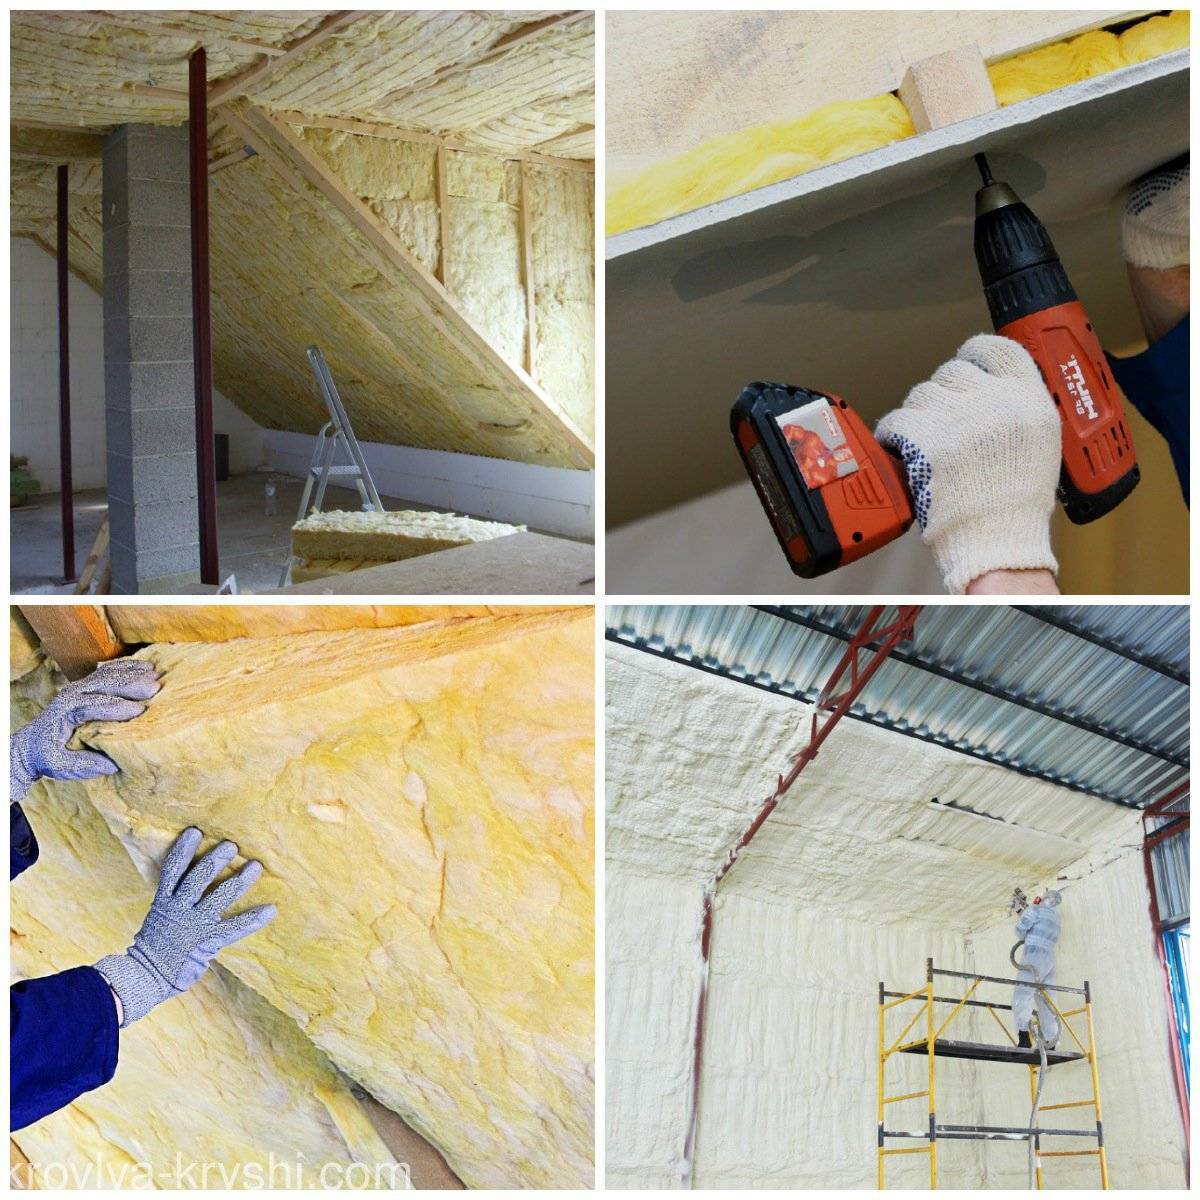 Утепление бетонного потолка изнутри: выбор материала, монтаж